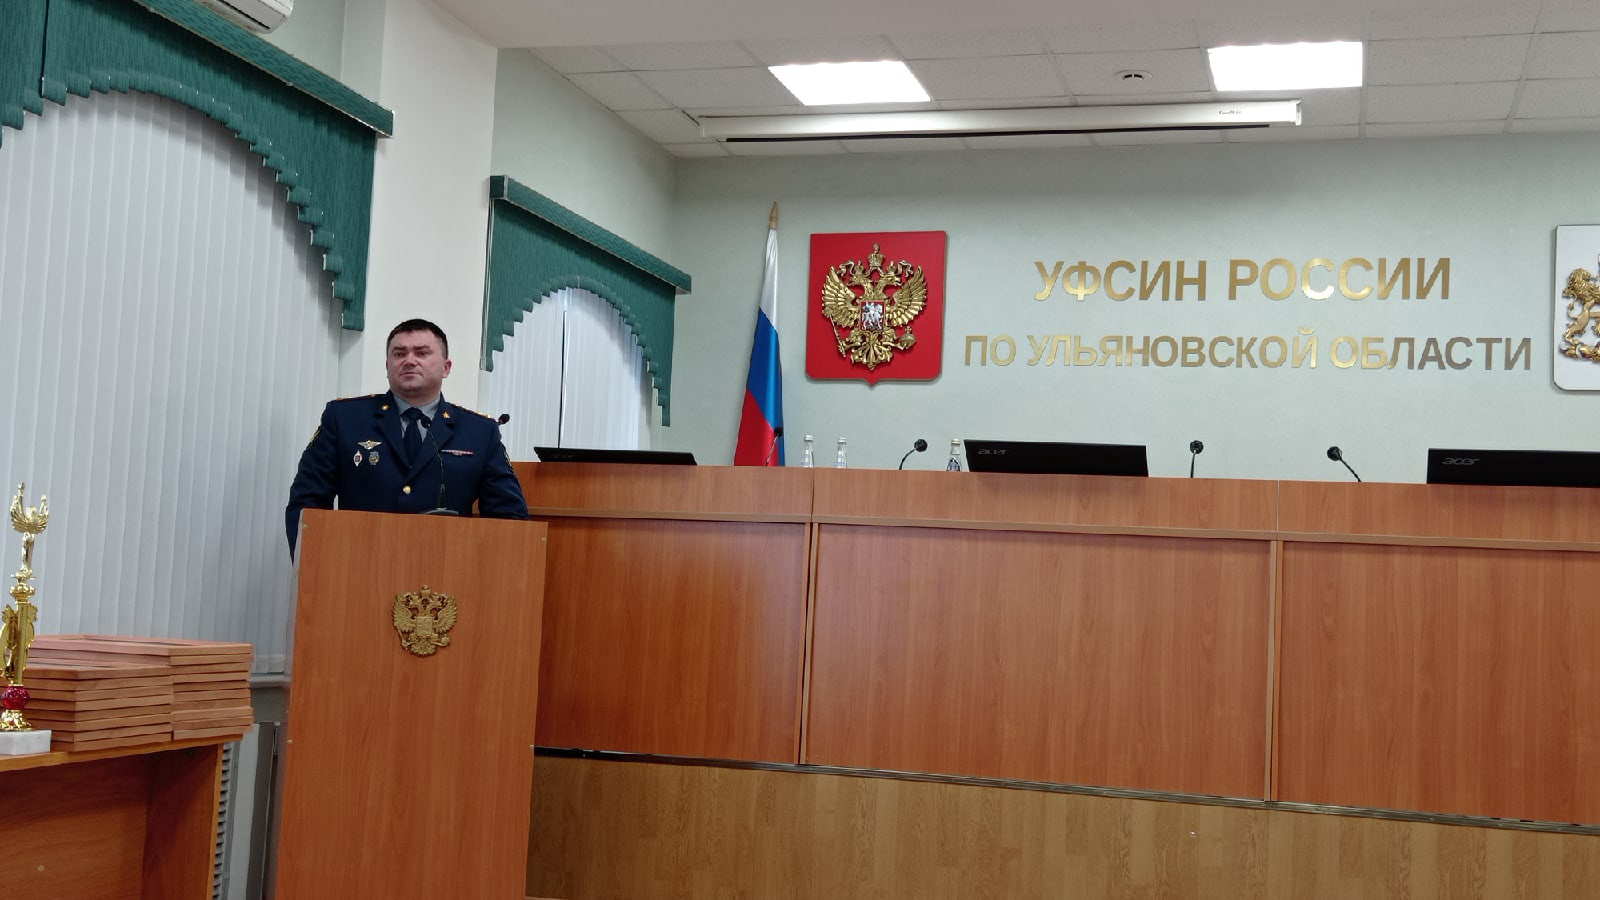 Шантаж продолжается: начальник ульяновского УФСИН о наведении порядка и сопротивлении этому зеков